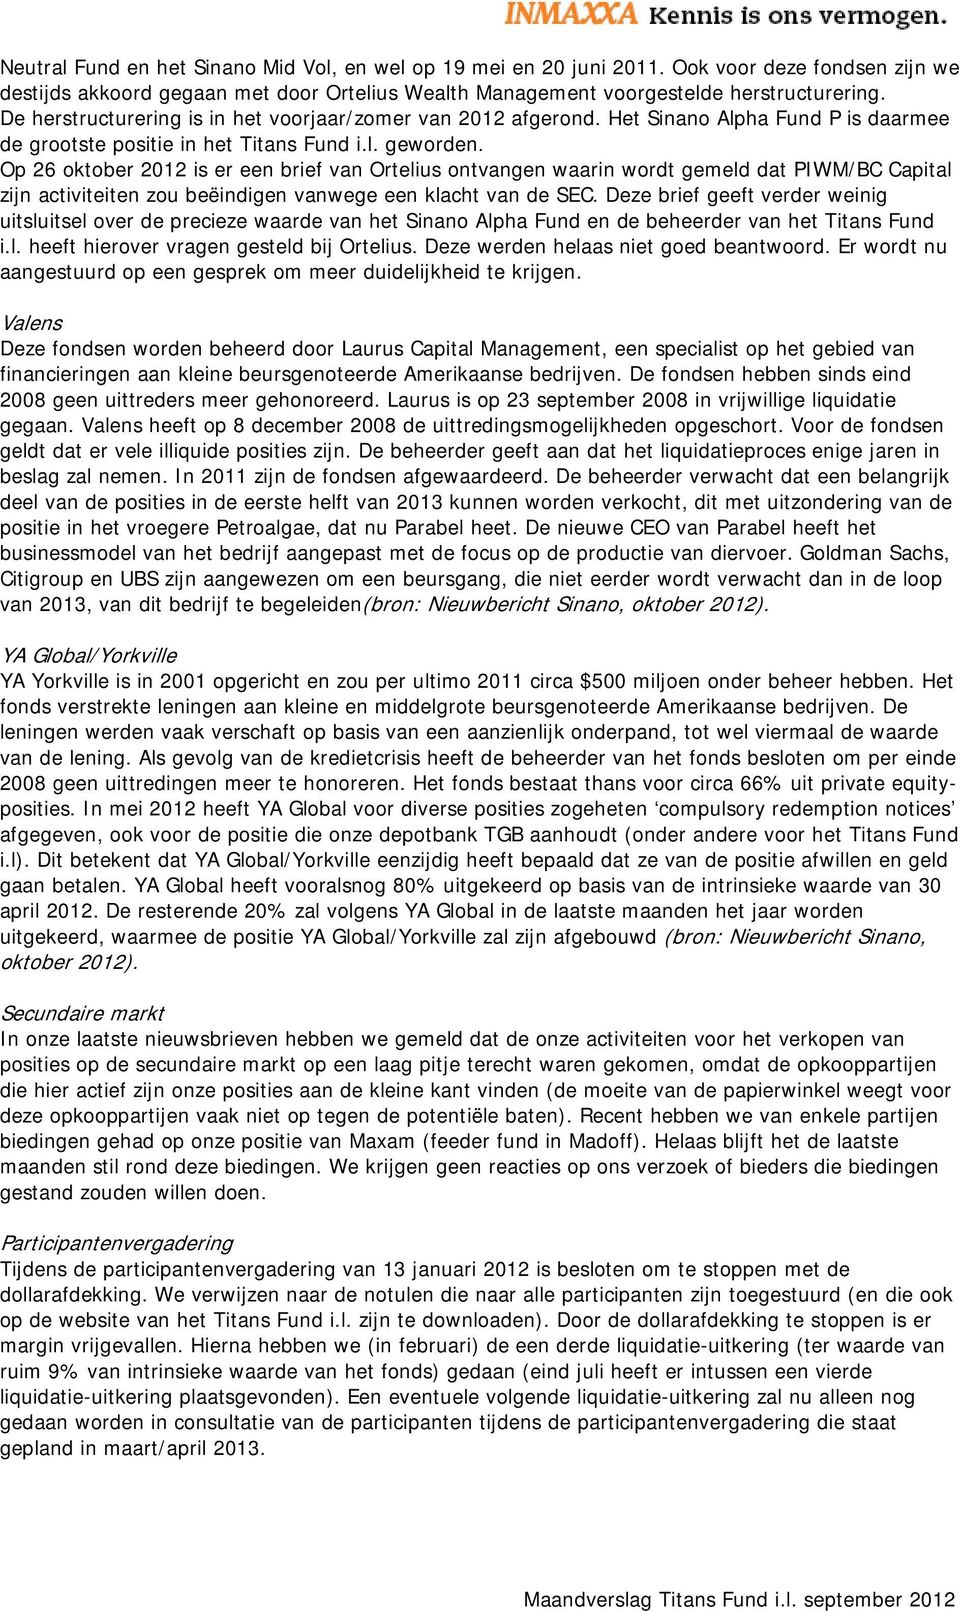 Op 26 oktober 2012 is er een brief van Ortelius ontvangen waarin wordt gemeld dat PIWM/BC Capital zijn activiteiten zou beëindigen vanwege een klacht van de SEC.